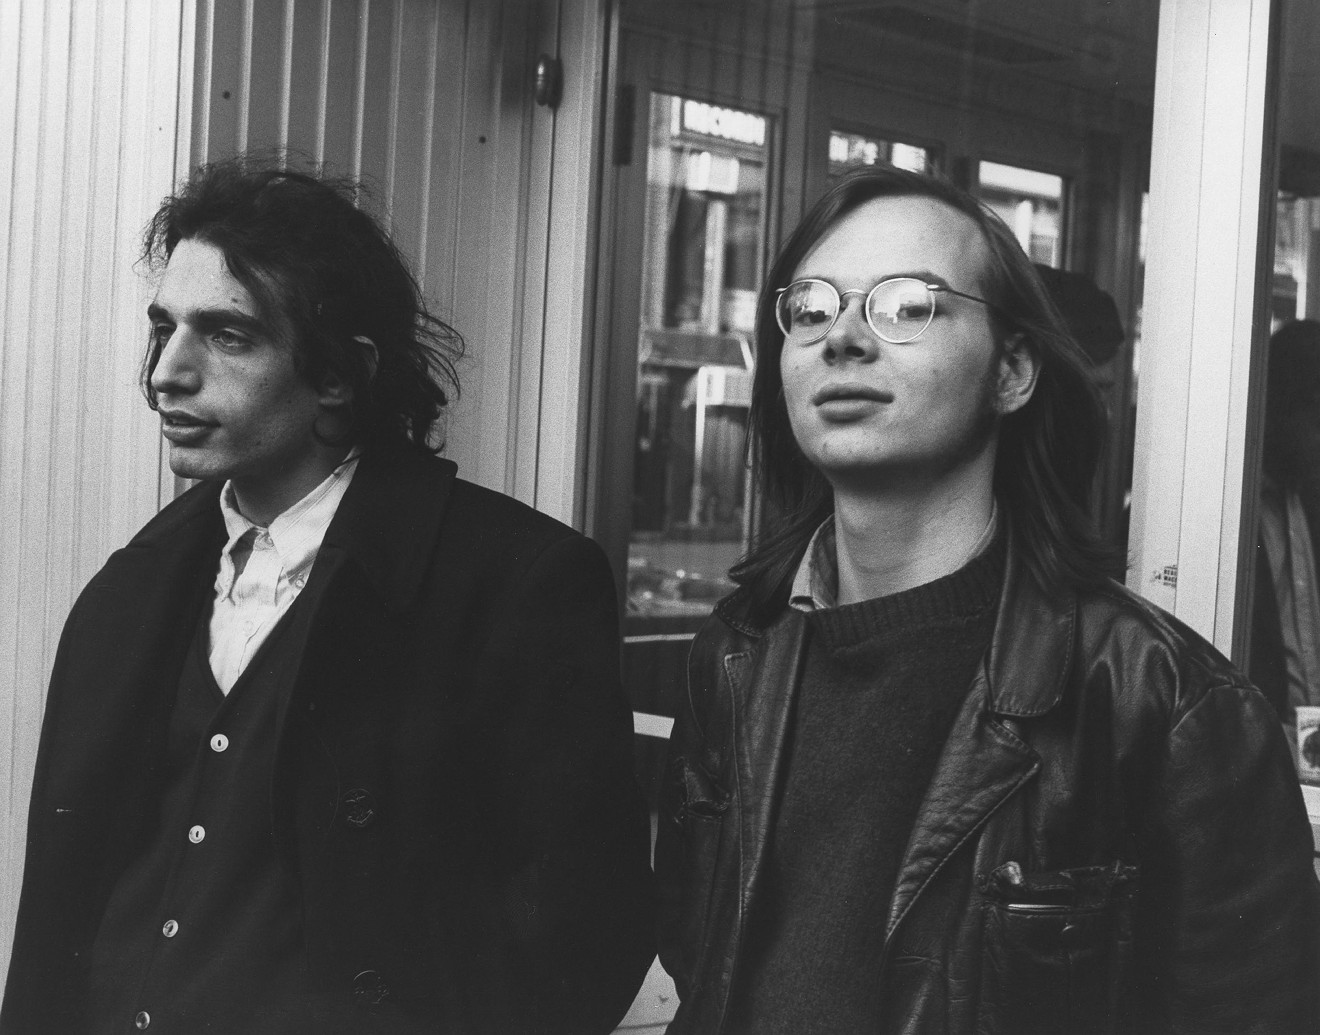 Donald Fagen (left) and Walter Becker of Steely Dan in 1971